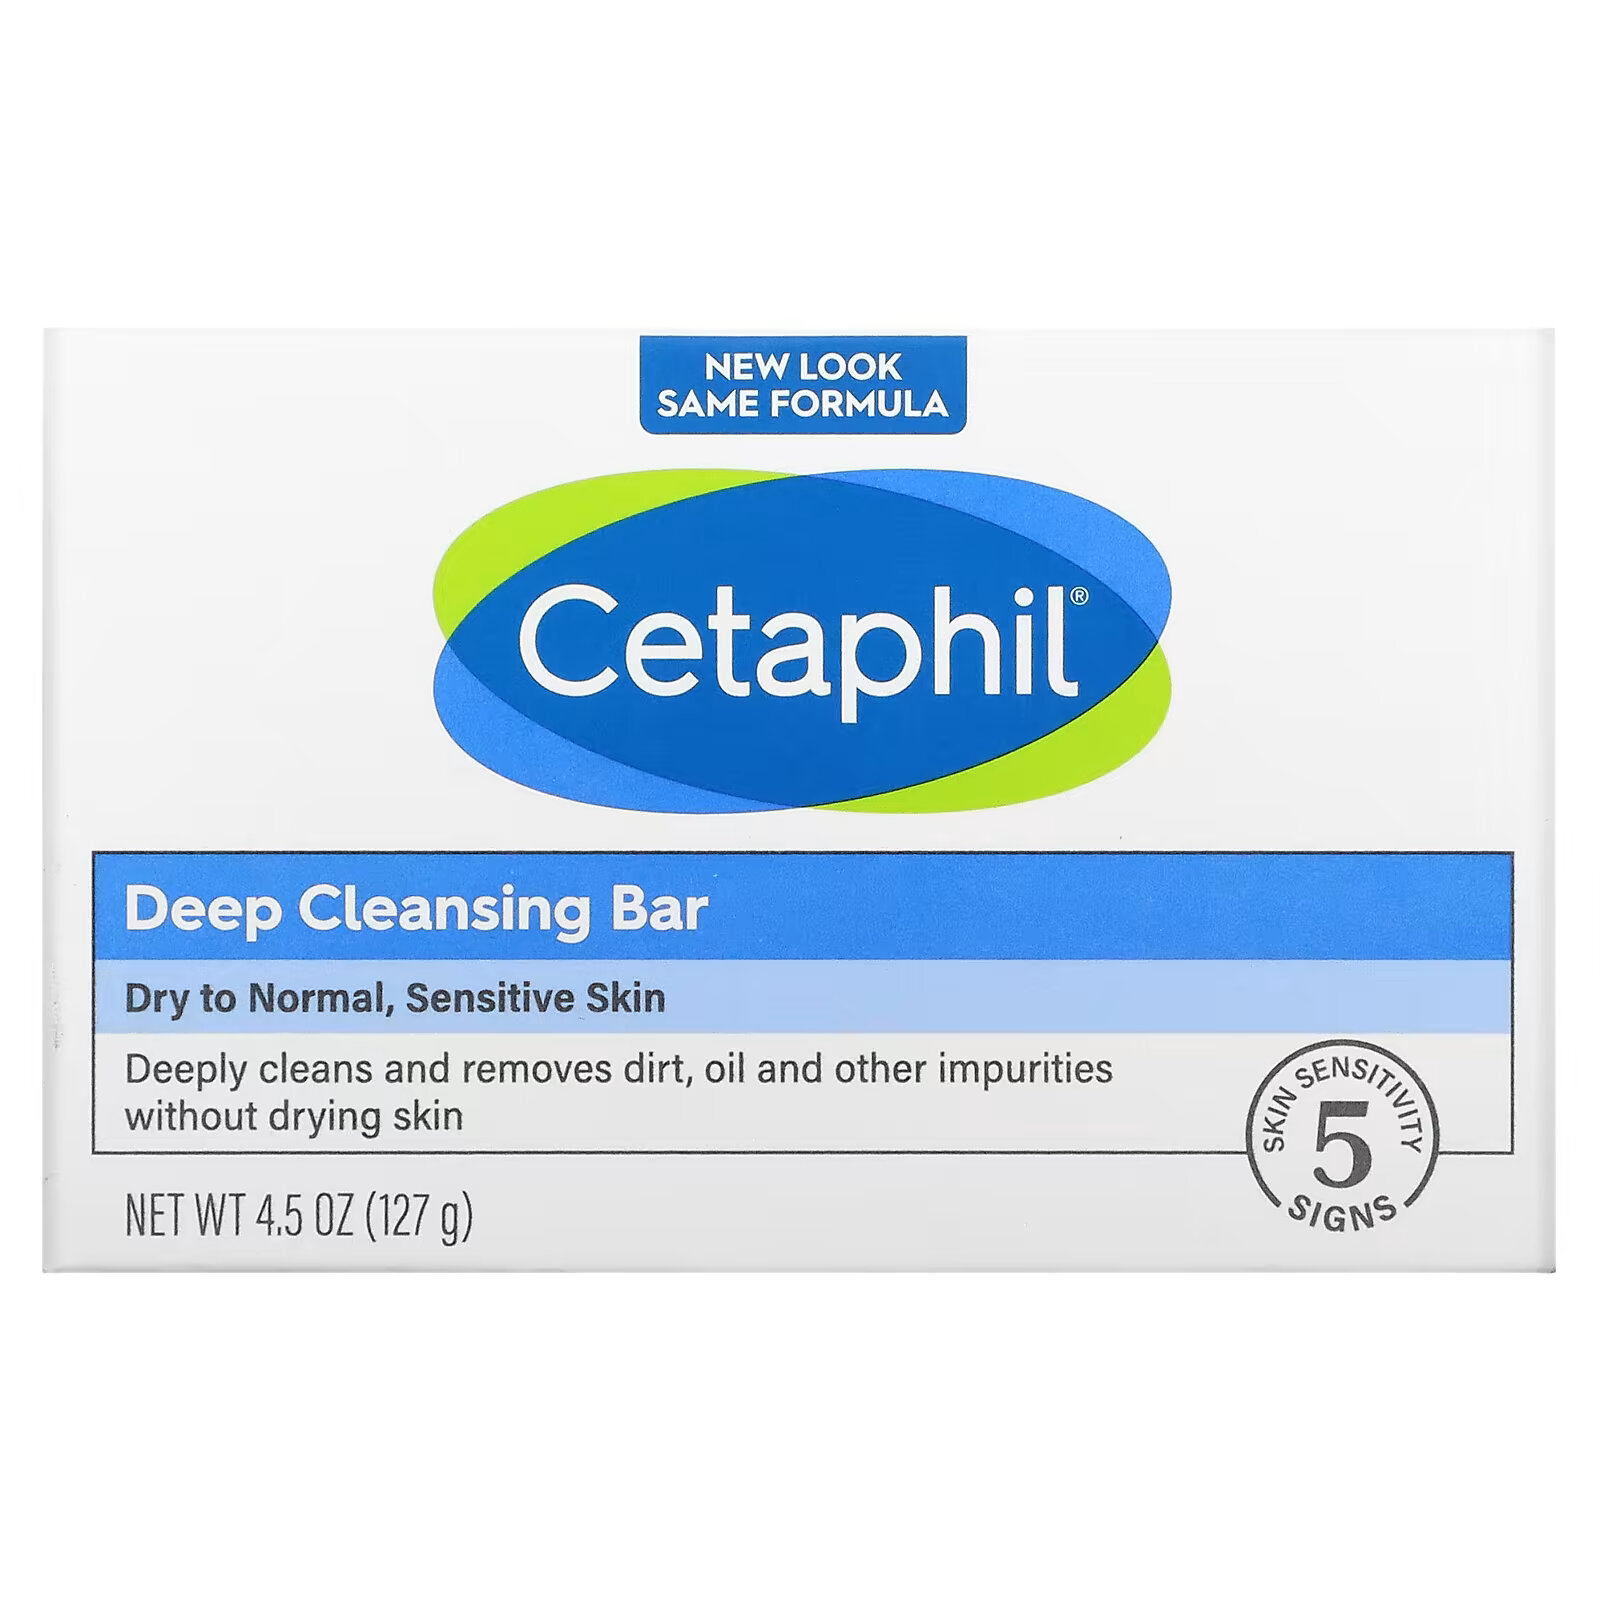 Мыло Cetaphil для глубокого очищения, 127 г дерматологический хлеб 127 гр cetaphil